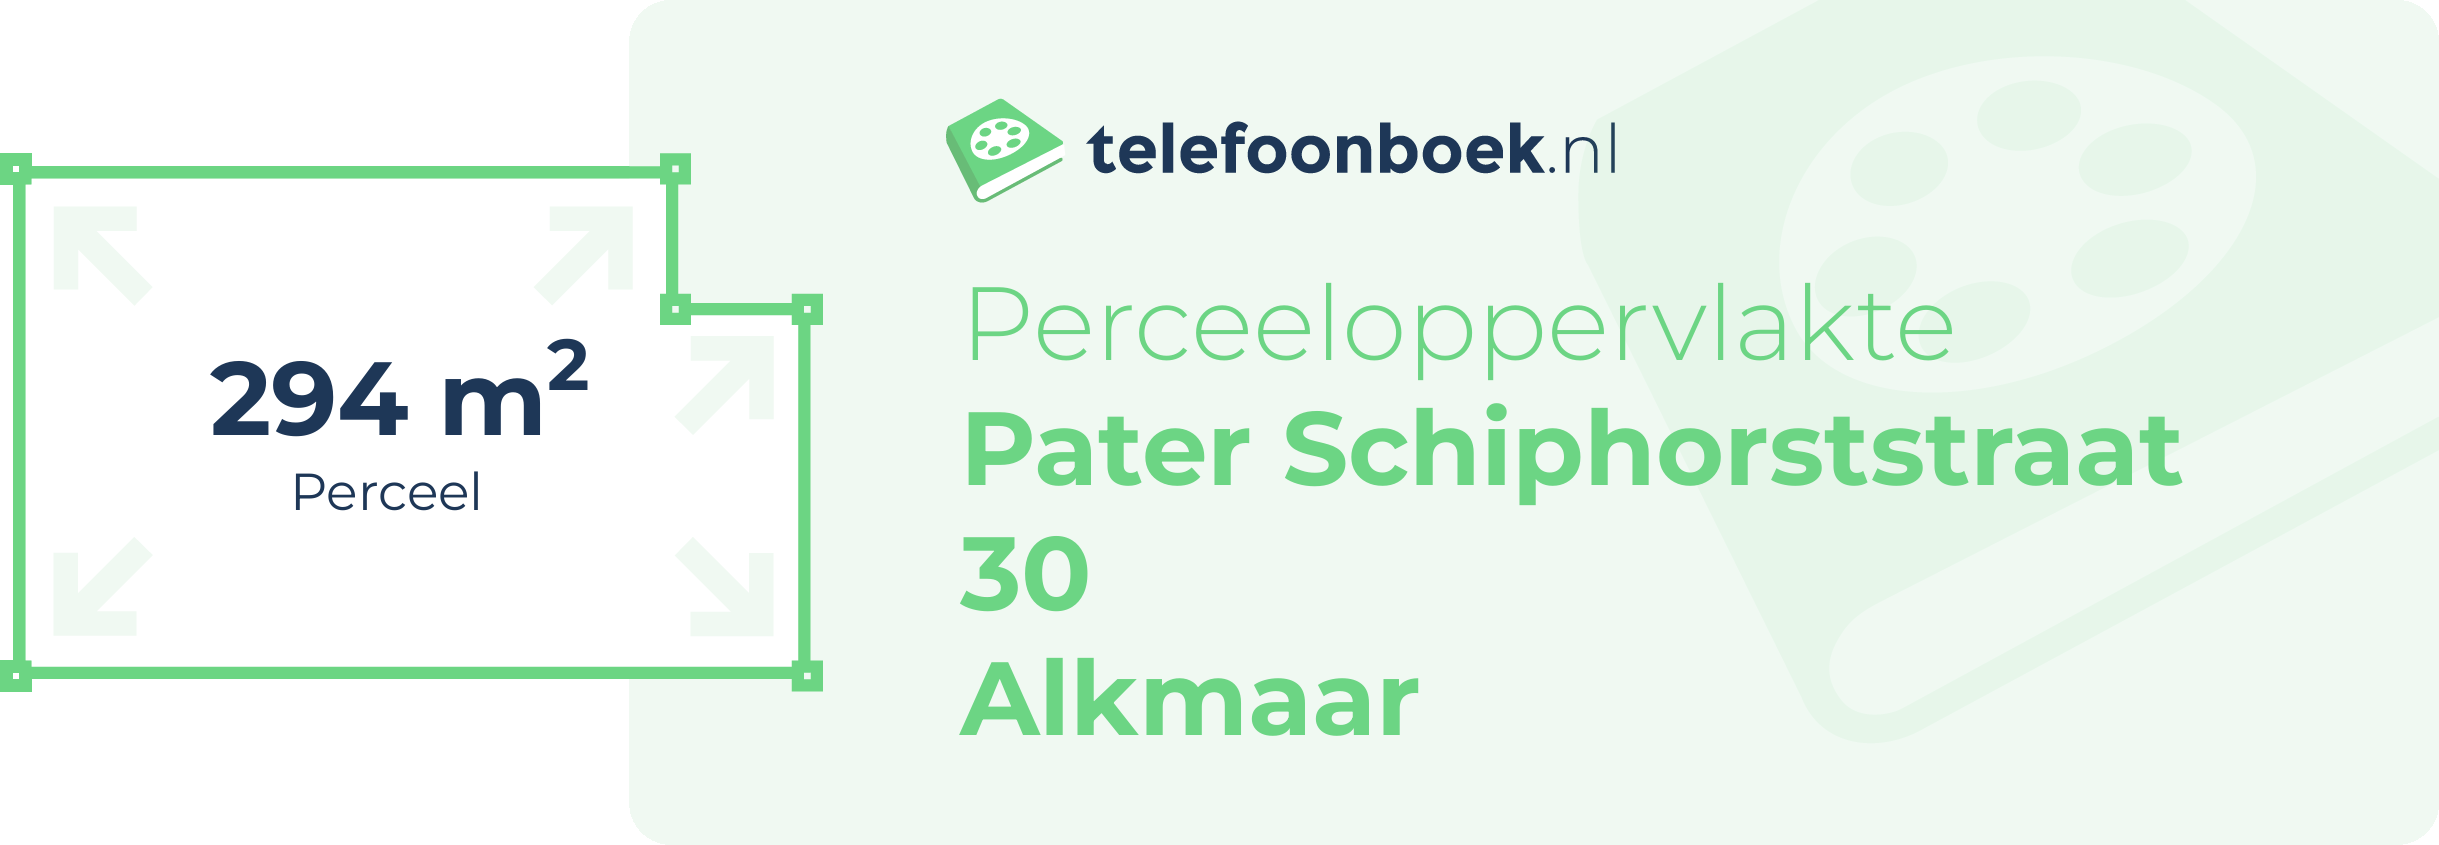 Perceeloppervlakte Pater Schiphorststraat 30 Alkmaar